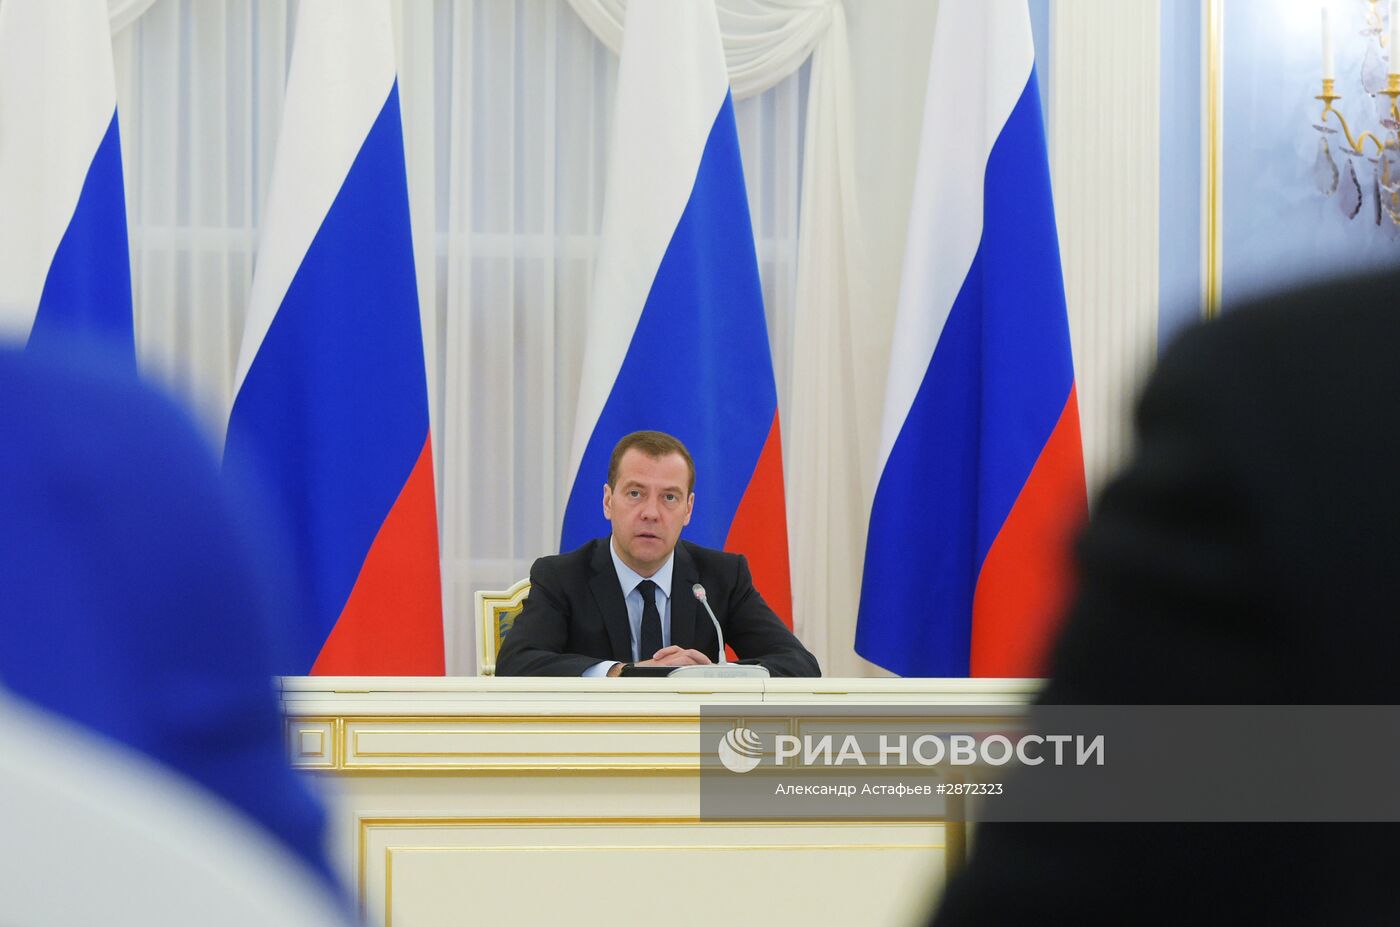 Премьер-министр РФ Д. Медведев провел заседание Комиссии по подготовке программного документа "Единой России"